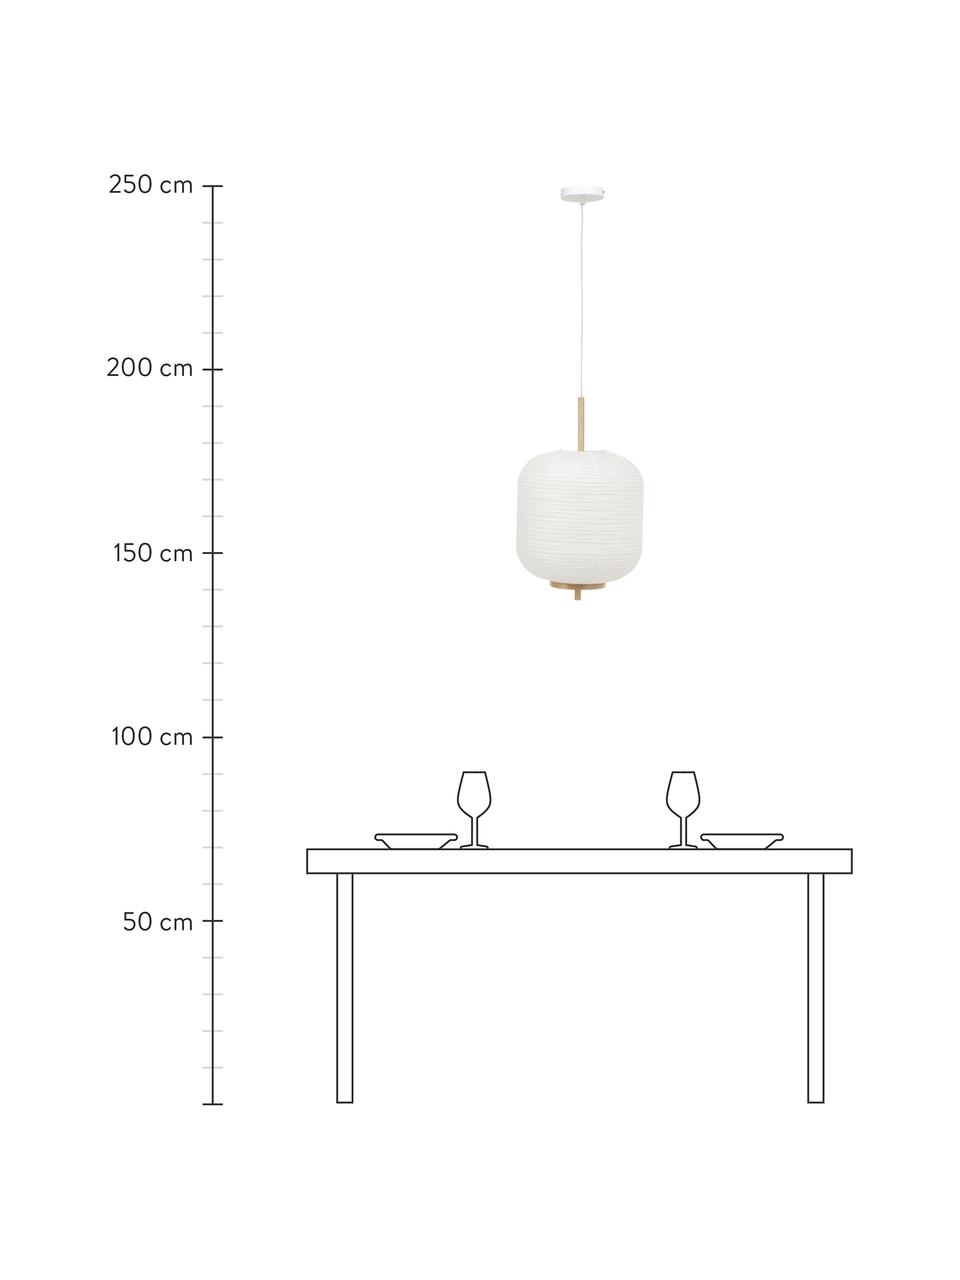 Design hanglamp Misaki uit rijstpapier, Lampenkap: rijstpapier, Decoratie: hout, Baldakijn: gepoedercoat metaal, Wit, Ø 35 x H 63 cm